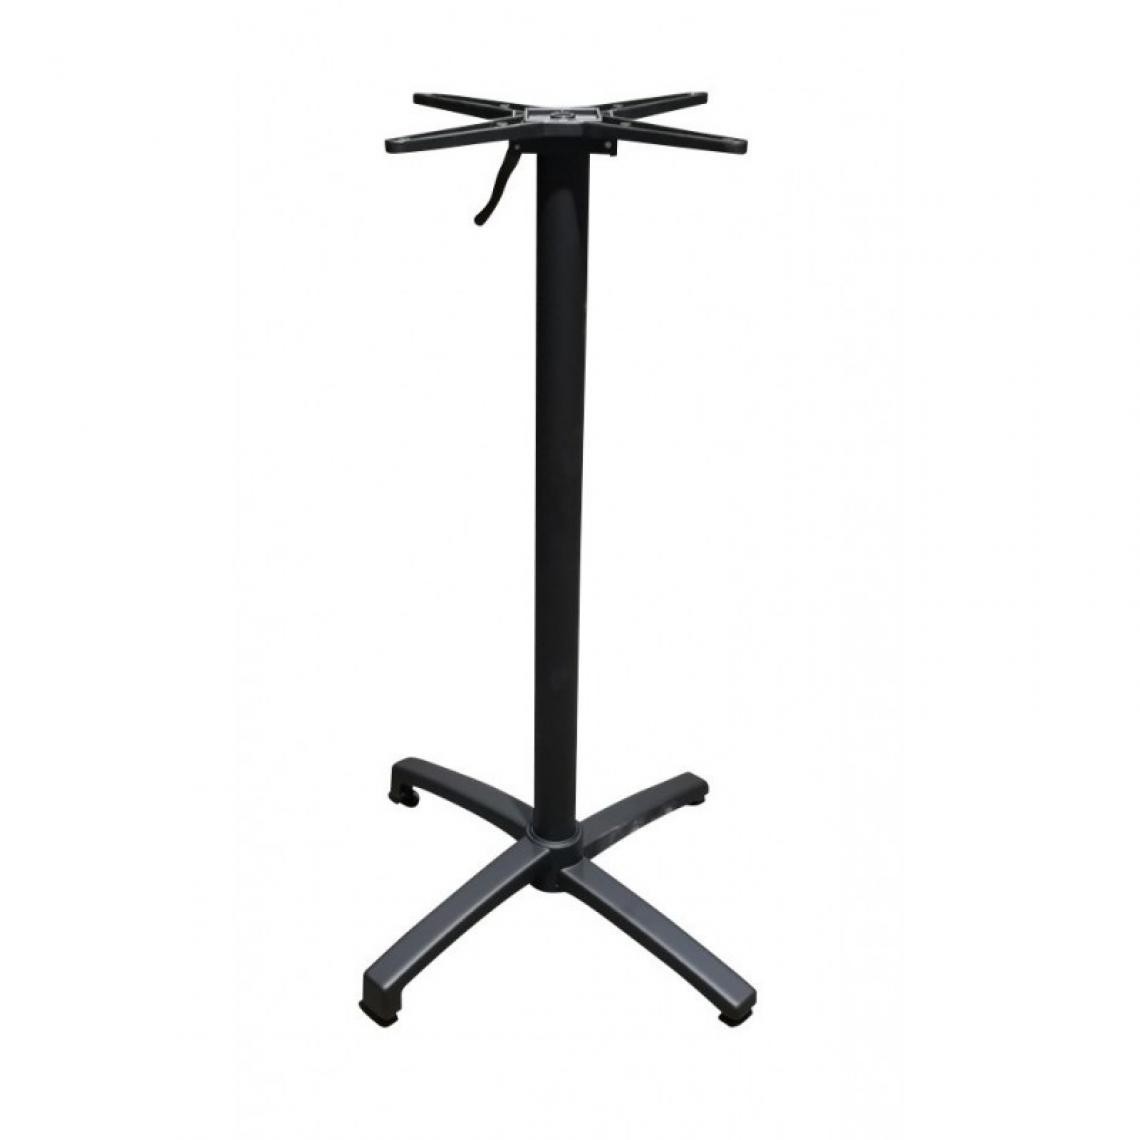 Materiel Chr Pro - Pied de Table Encastrable en Aluminium Noir - H 72 cm - Aluminium - Pieds & roulettes pour meuble